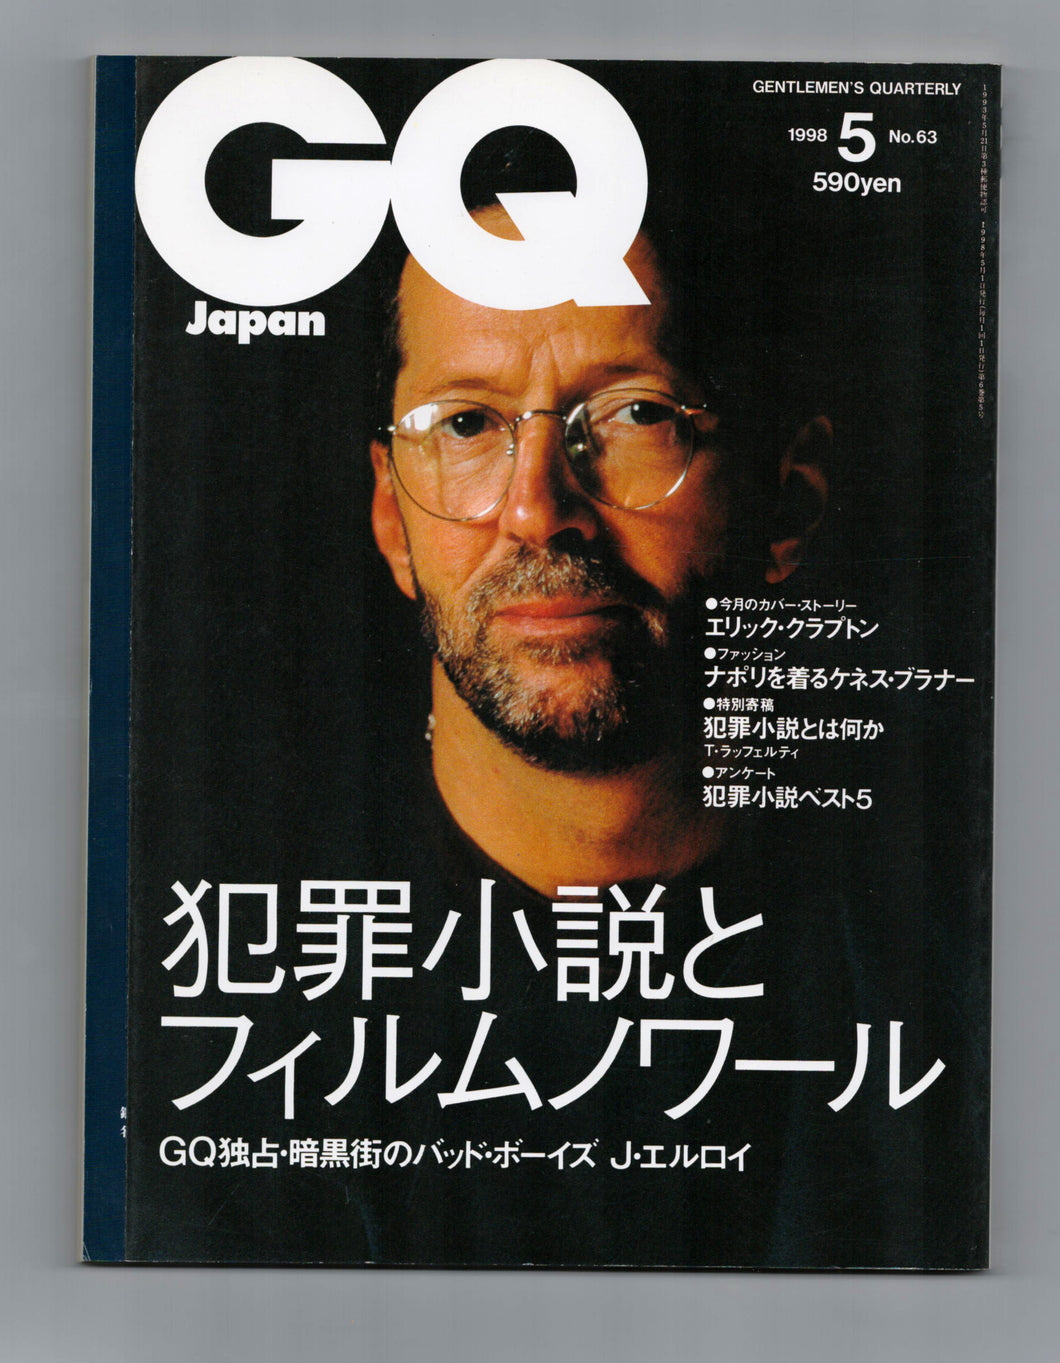 GQ Japan No 63 May 1998